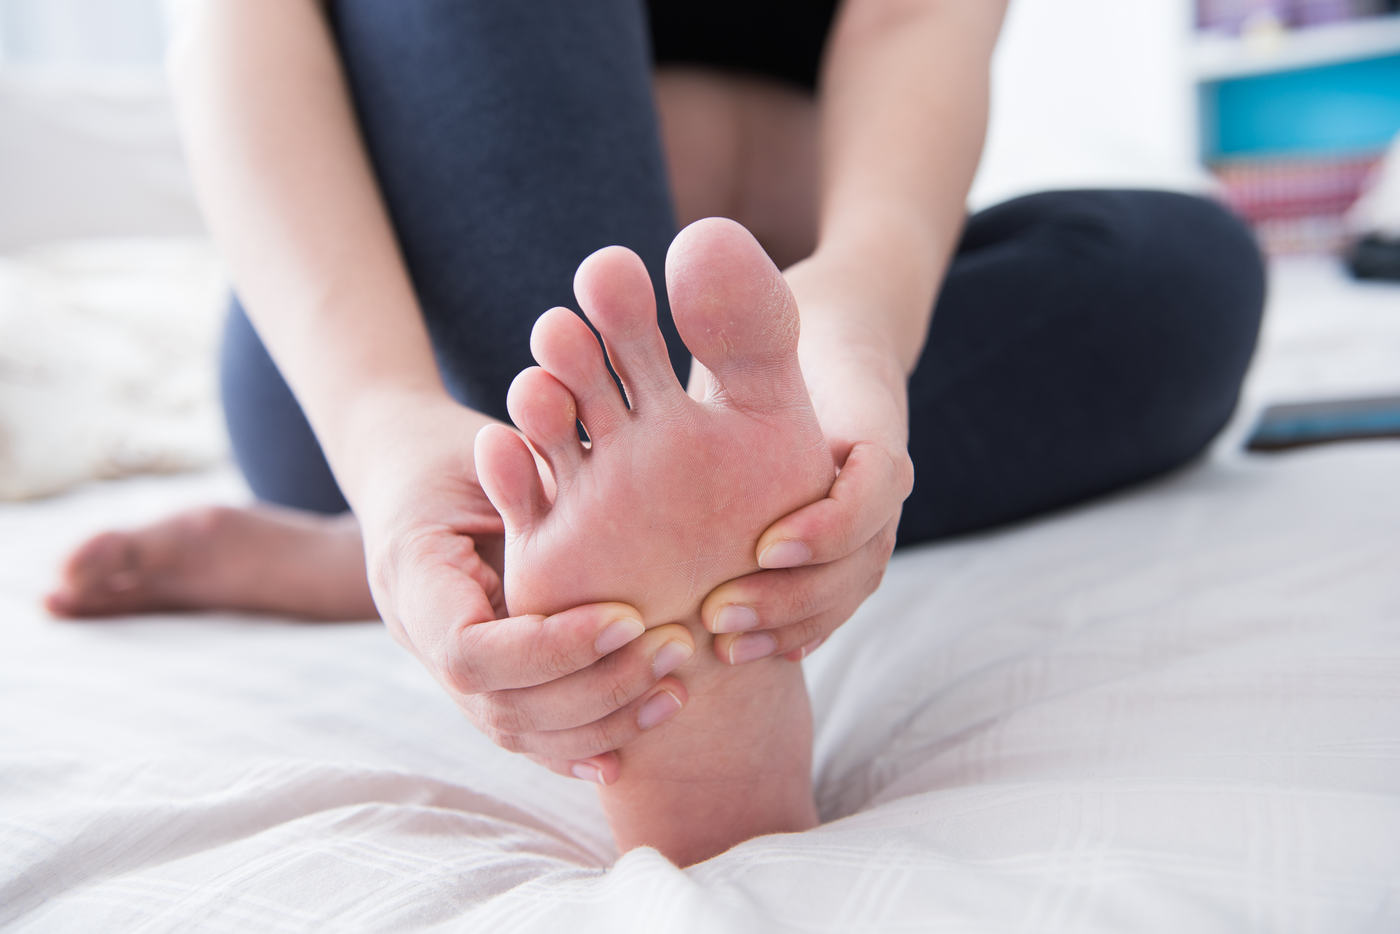 Care sunt cauzele durerilor de picioare?